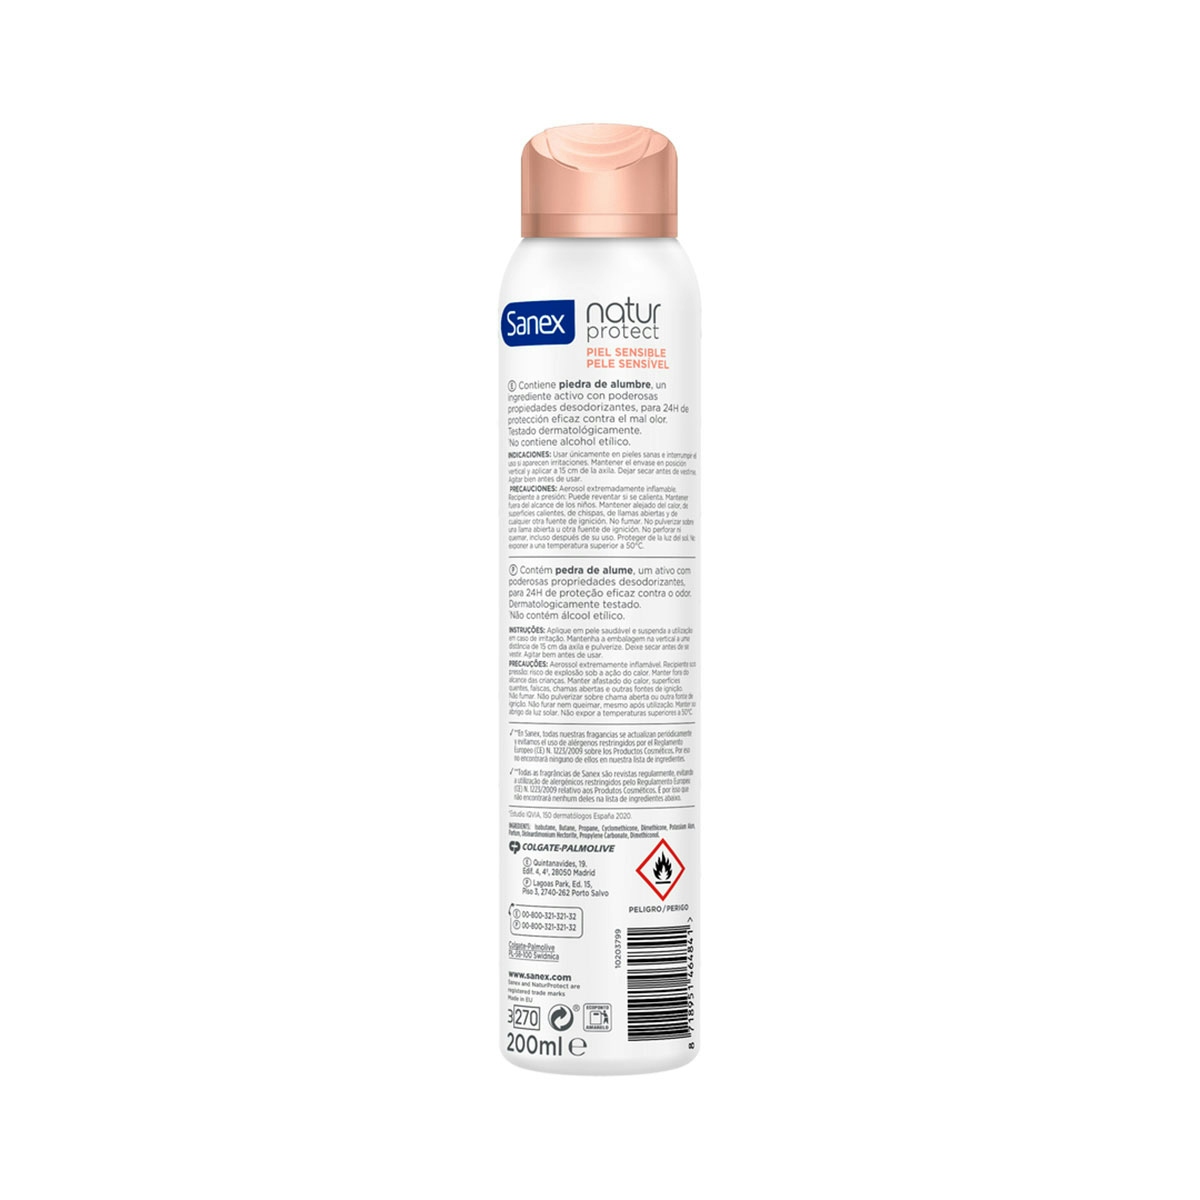 Desodorante spray Sanex Natur Protect piel sensible 24h con piedra de alumbre 200ml